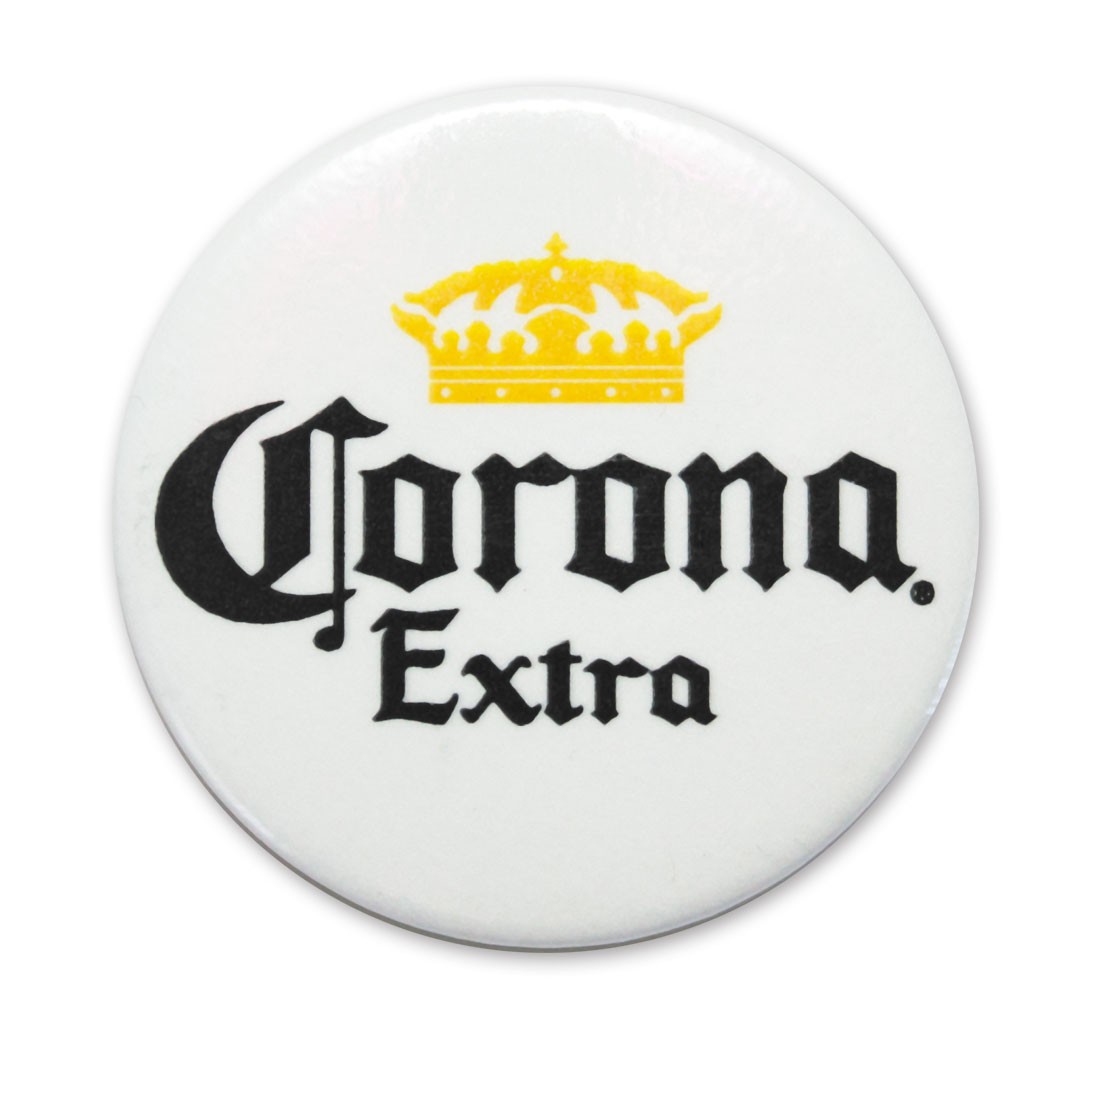 Corona Extra White Button Pin